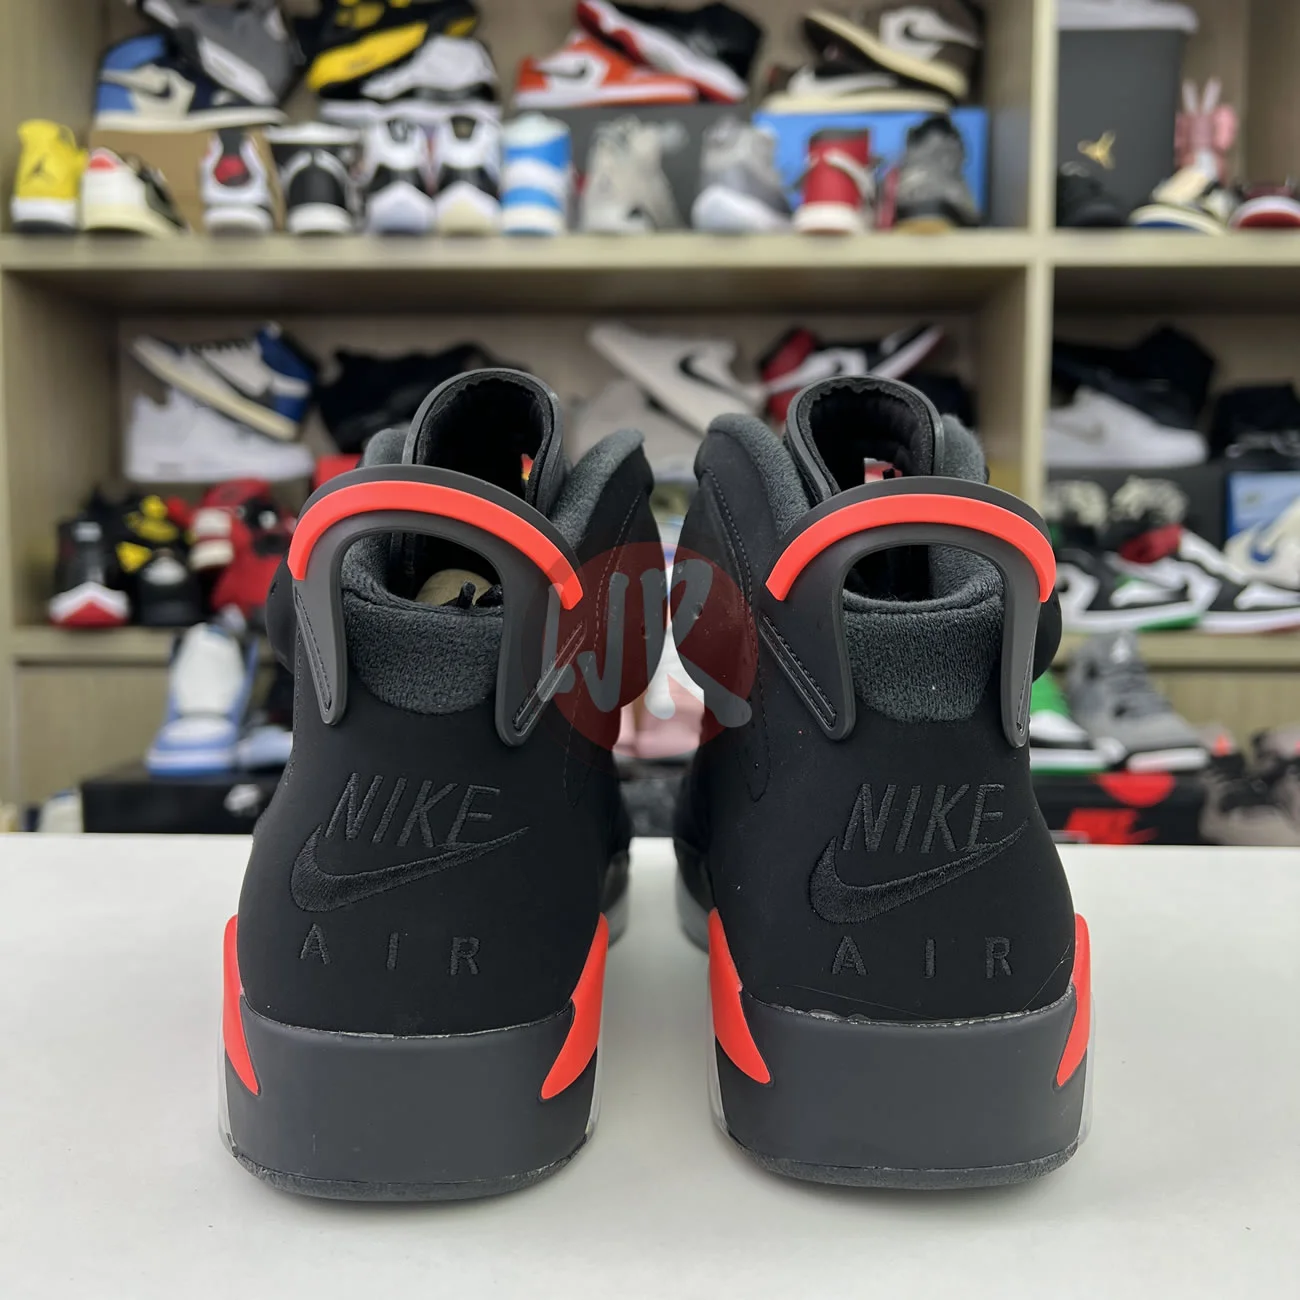 Air Jordan 6 Retro Black Infrared 2019 384664 060 Ljr Sneakers (4) - bc-ljr.com